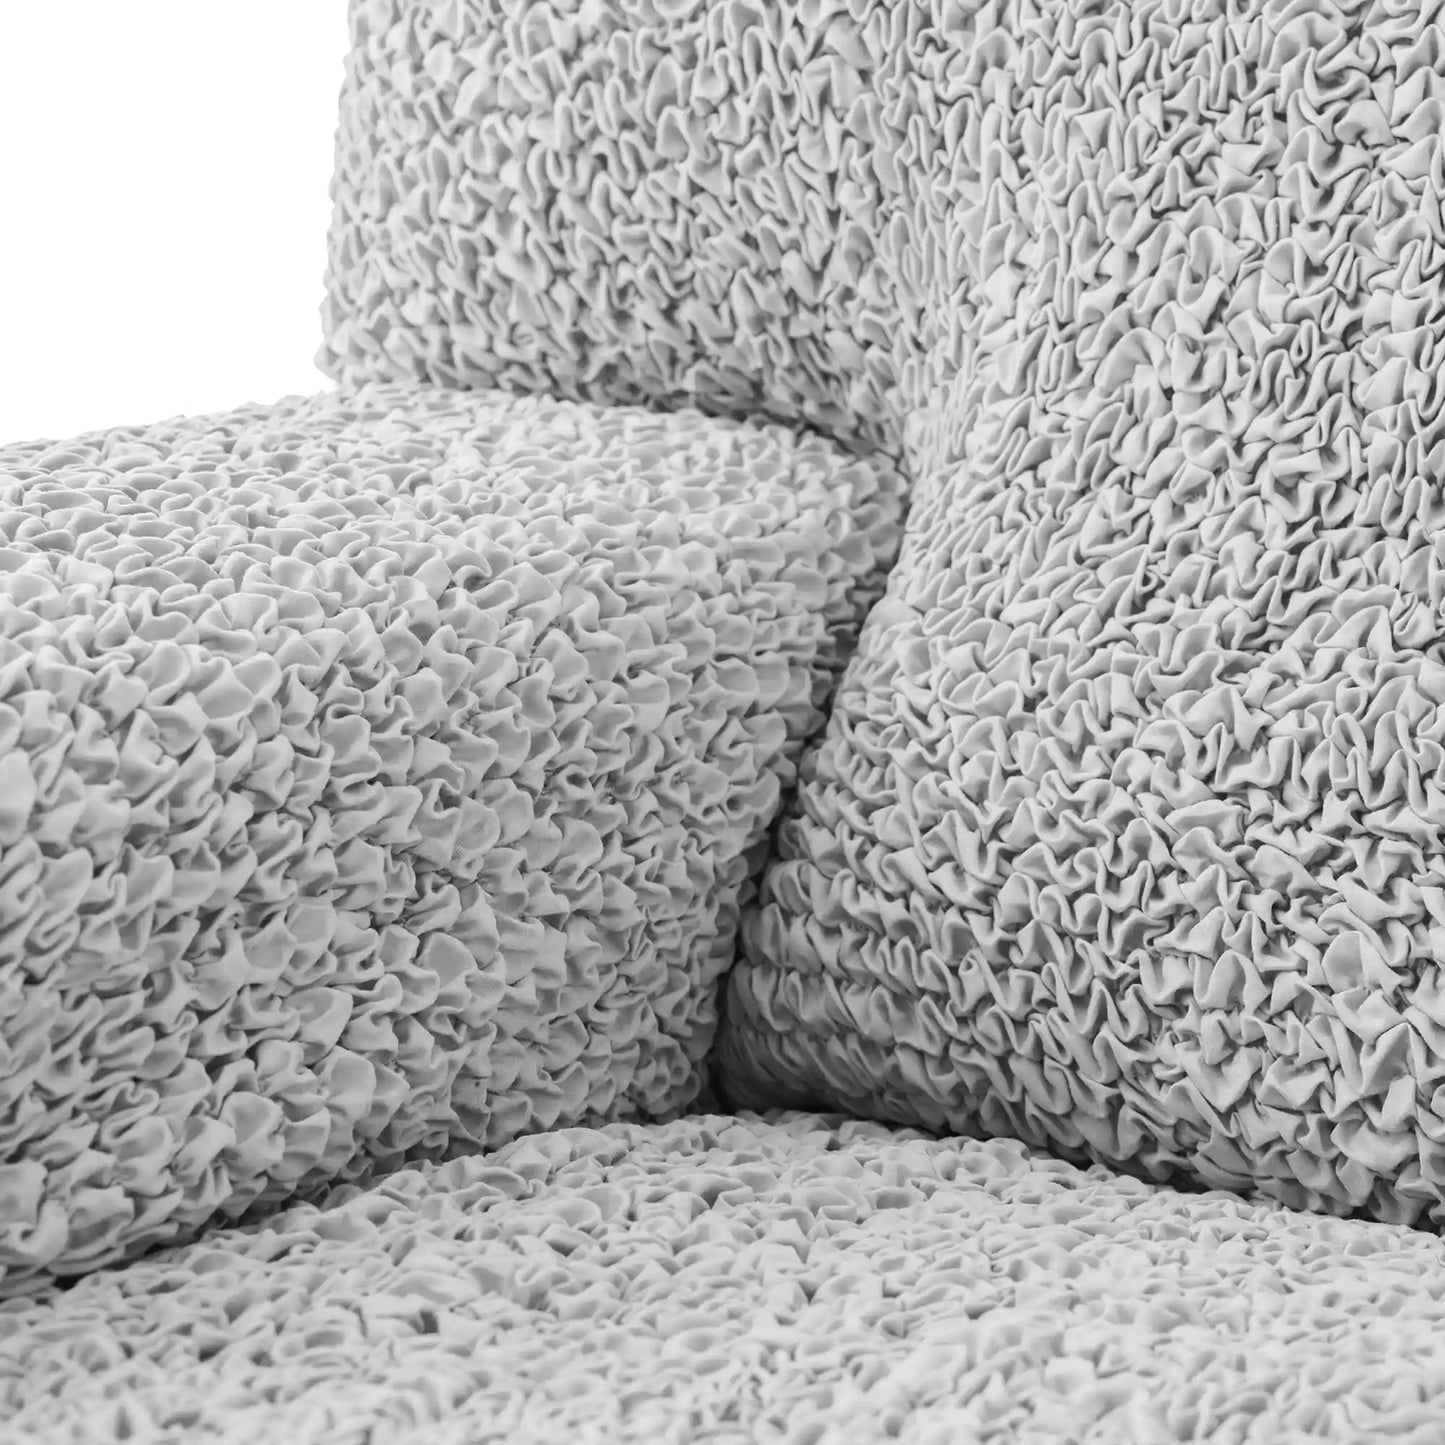 Corner Sofa Cover - Pearl, Microfibra